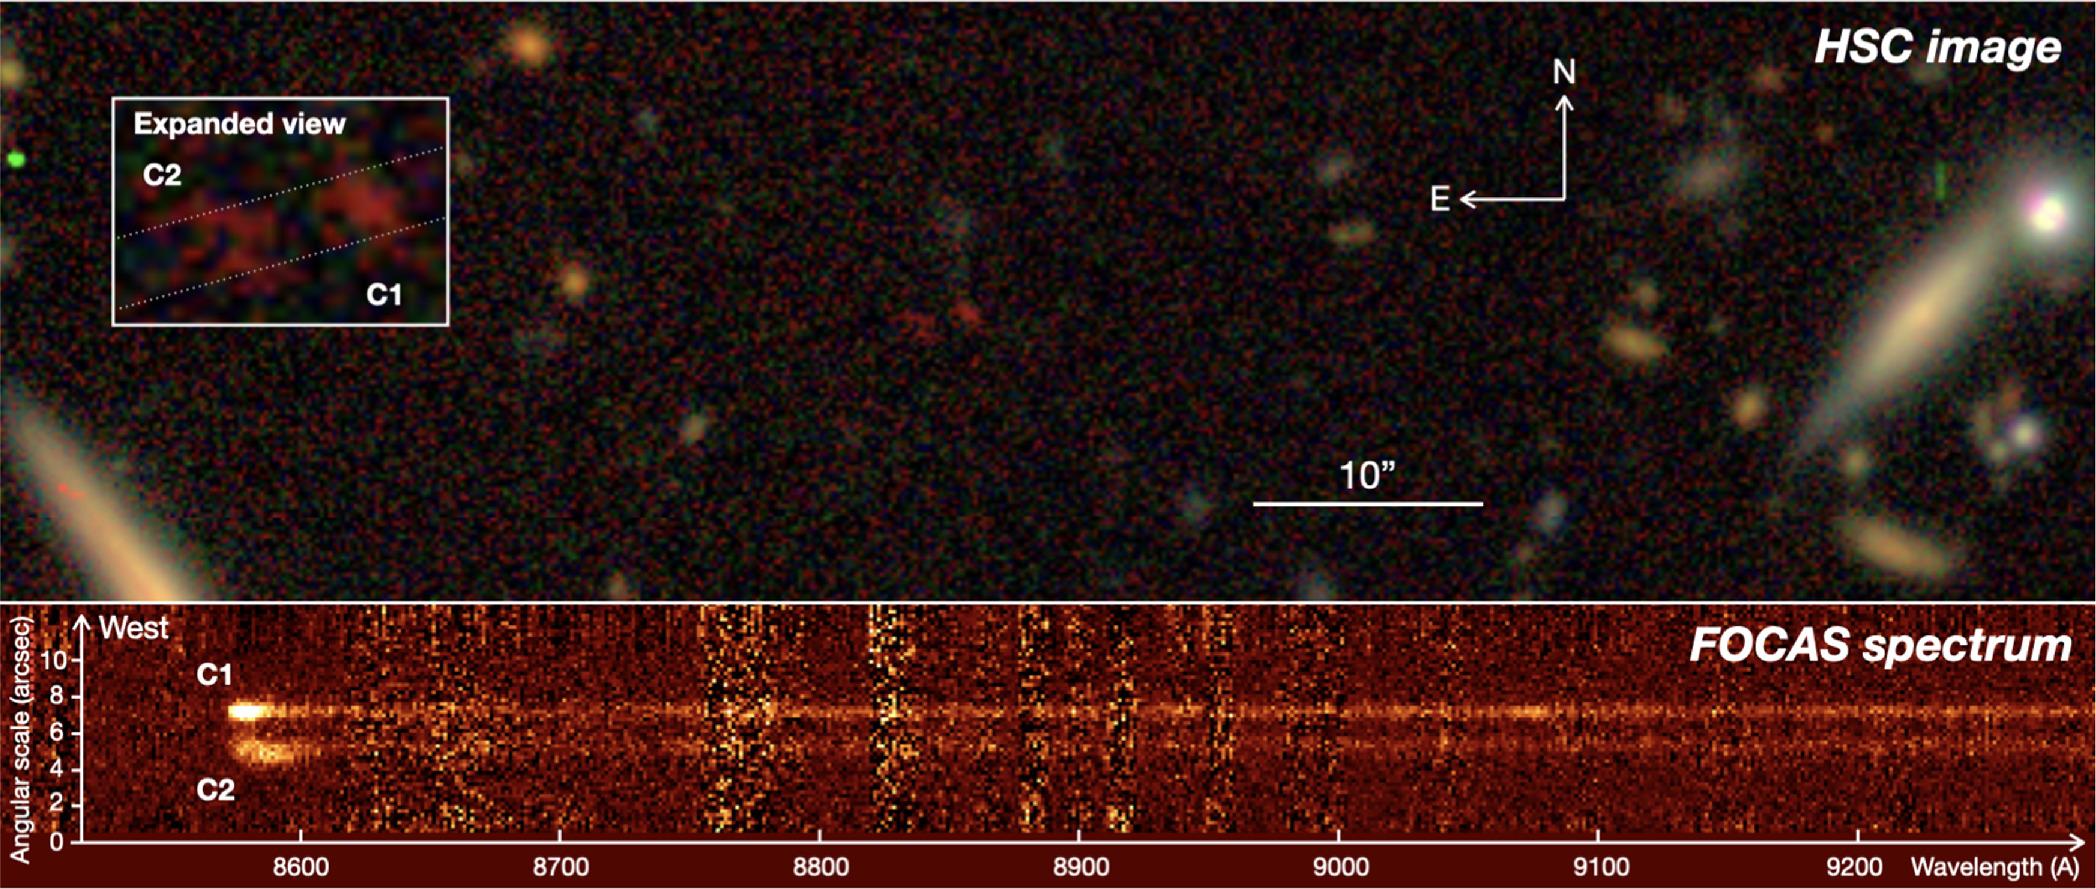 Imagens da câmera HSC e do espectômetro FOCA.